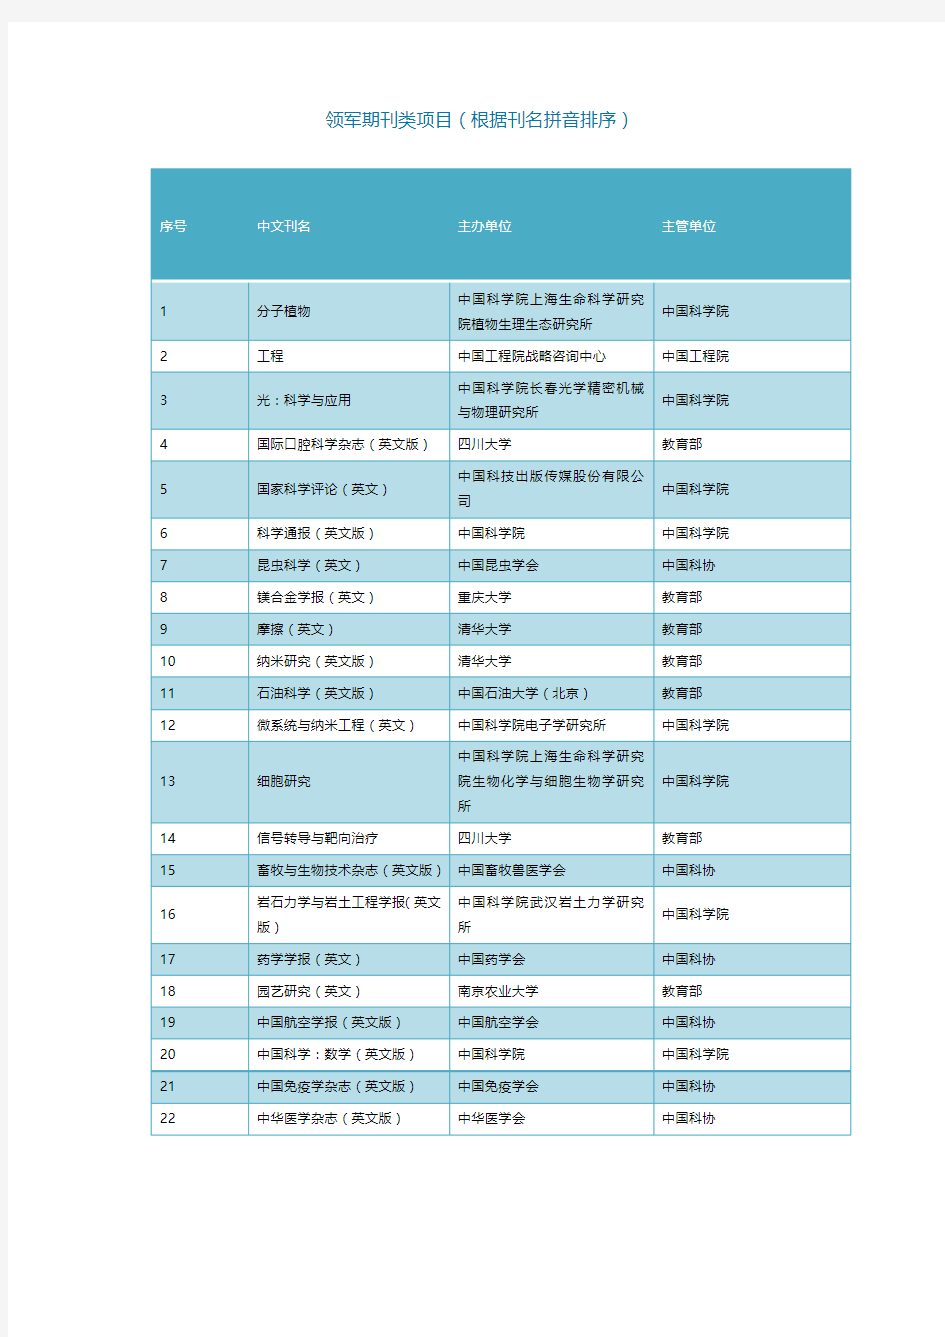 中国科技期刊卓越行动计划入选项目名单